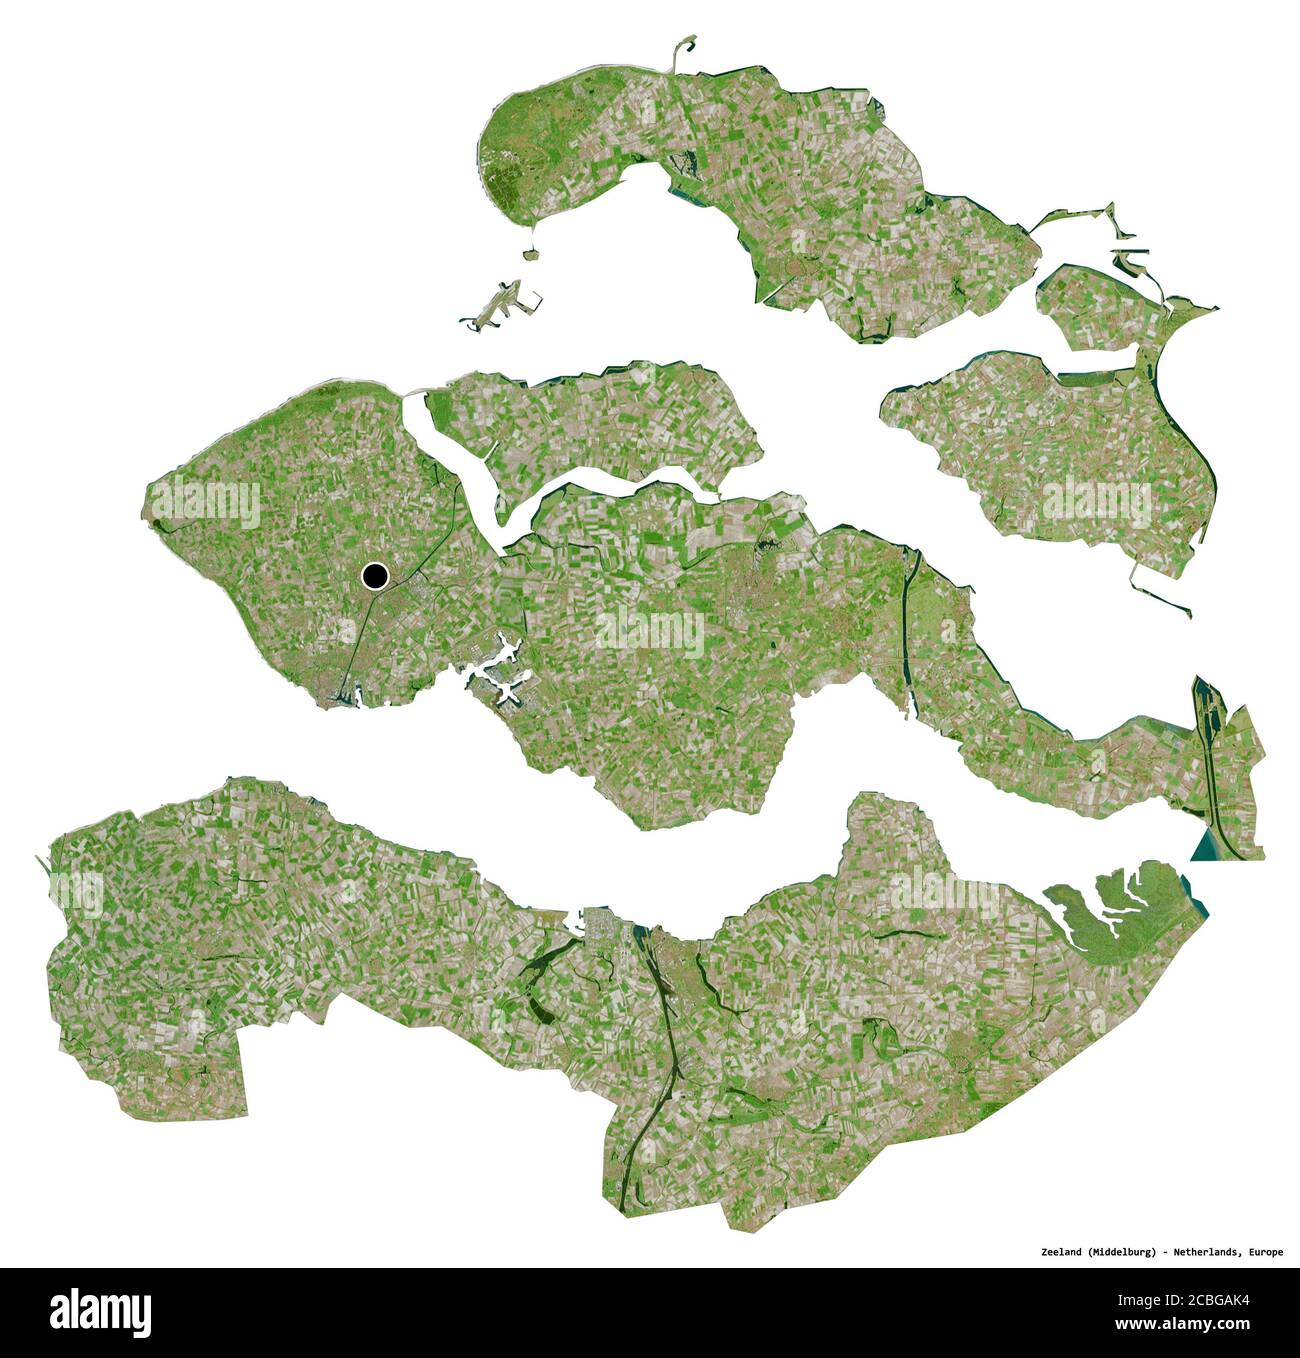 Forme de Zélande, province des pays-Bas, avec sa capitale isolée sur fond blanc. Imagerie satellite. Rendu 3D Banque D'Images